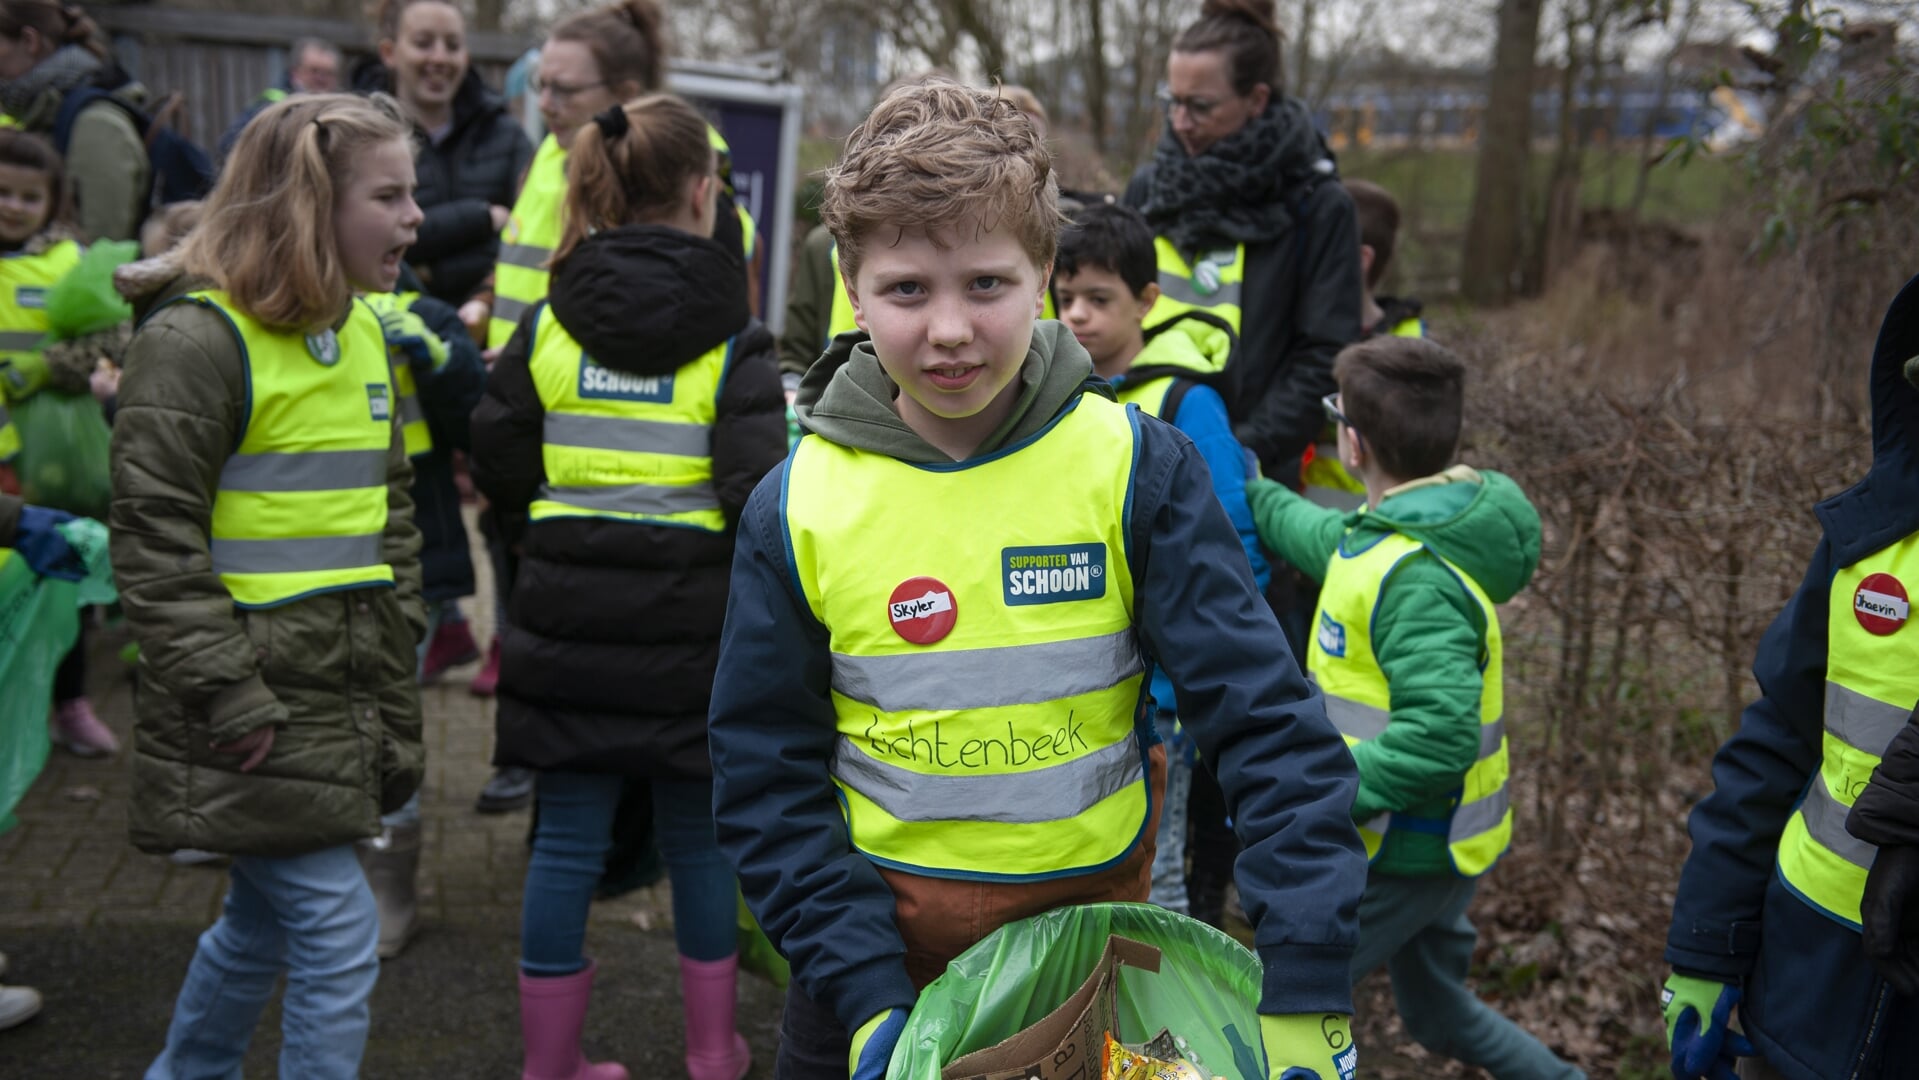 Ruim 3000 Arnhemse leerlingen zetten zich afgelopen week tijdens de Afvalestafette in voor een schone stad door, met grijpers en zak, zwerfafval te lijf te gaan.